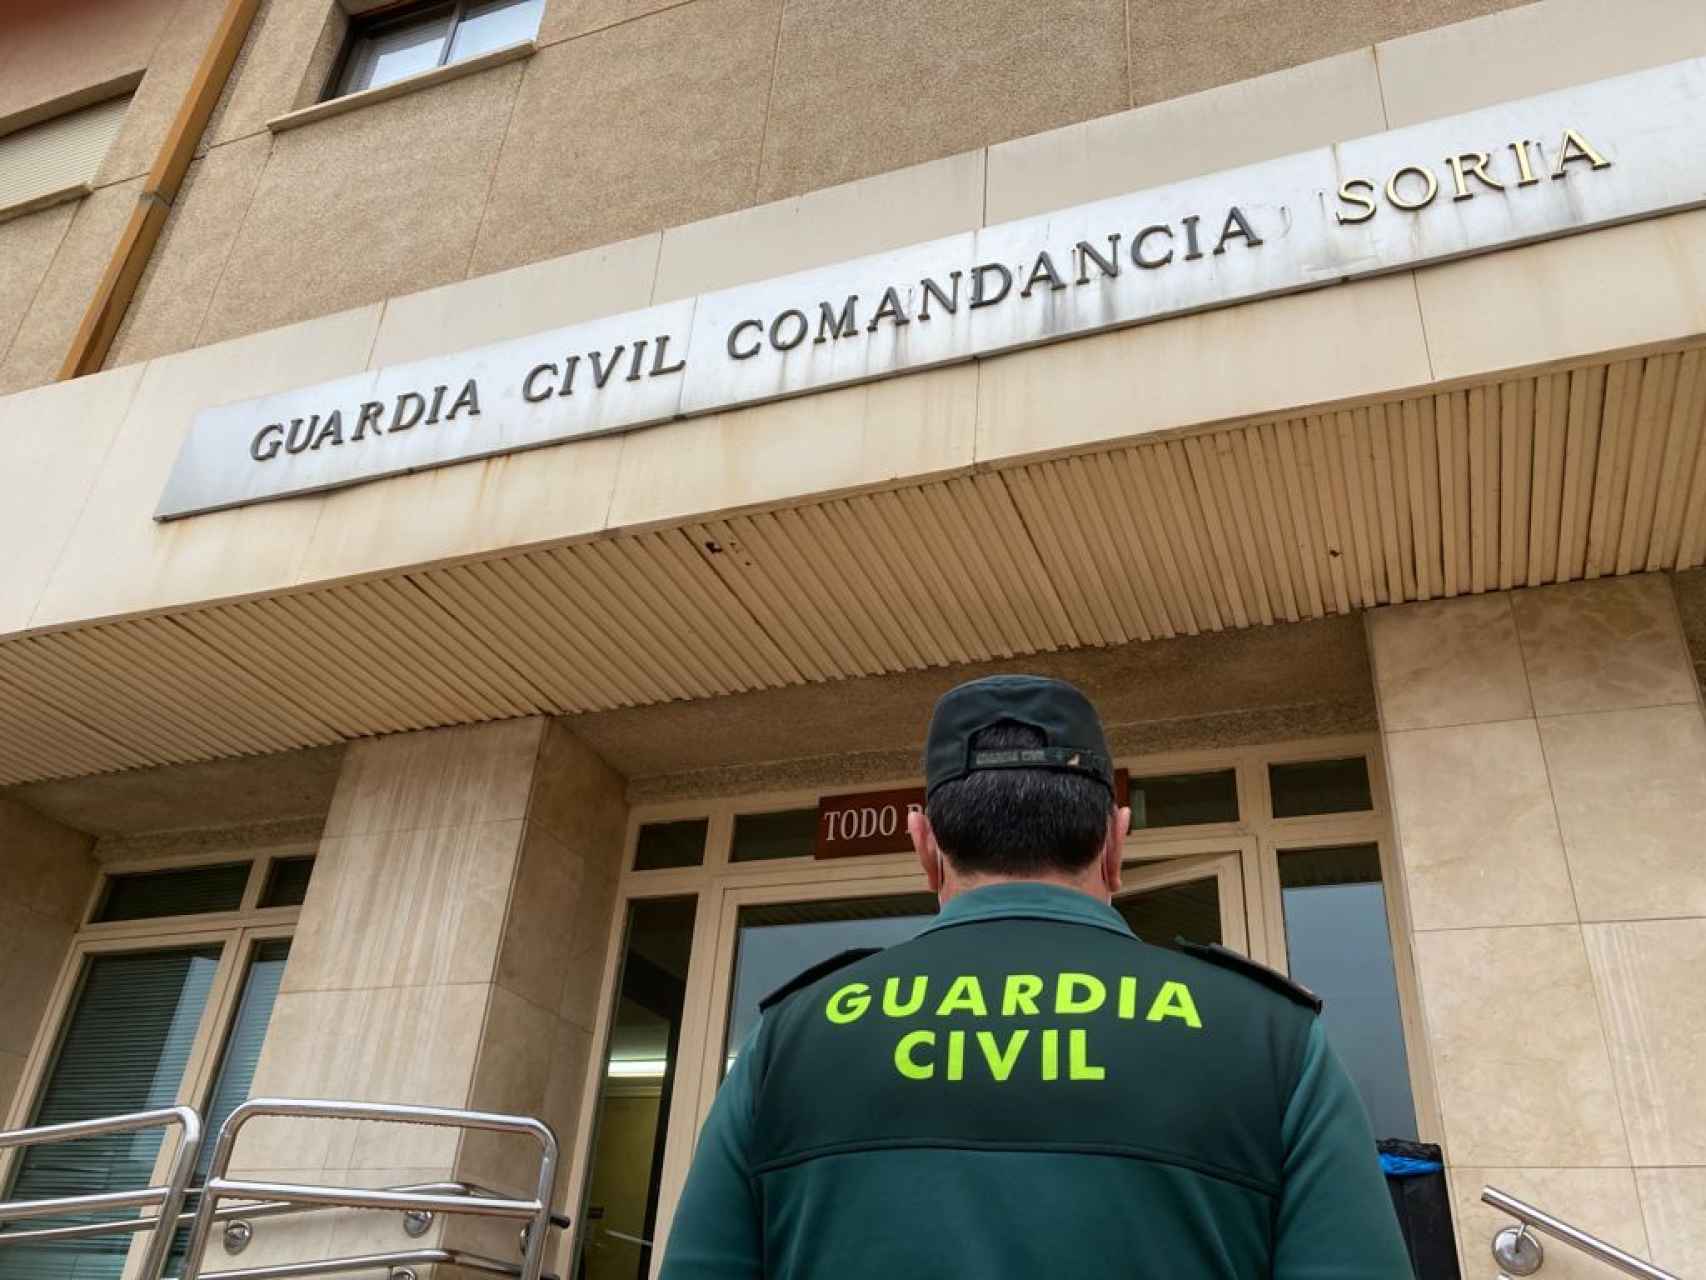 Imagen de la Guardia Civil de Soria